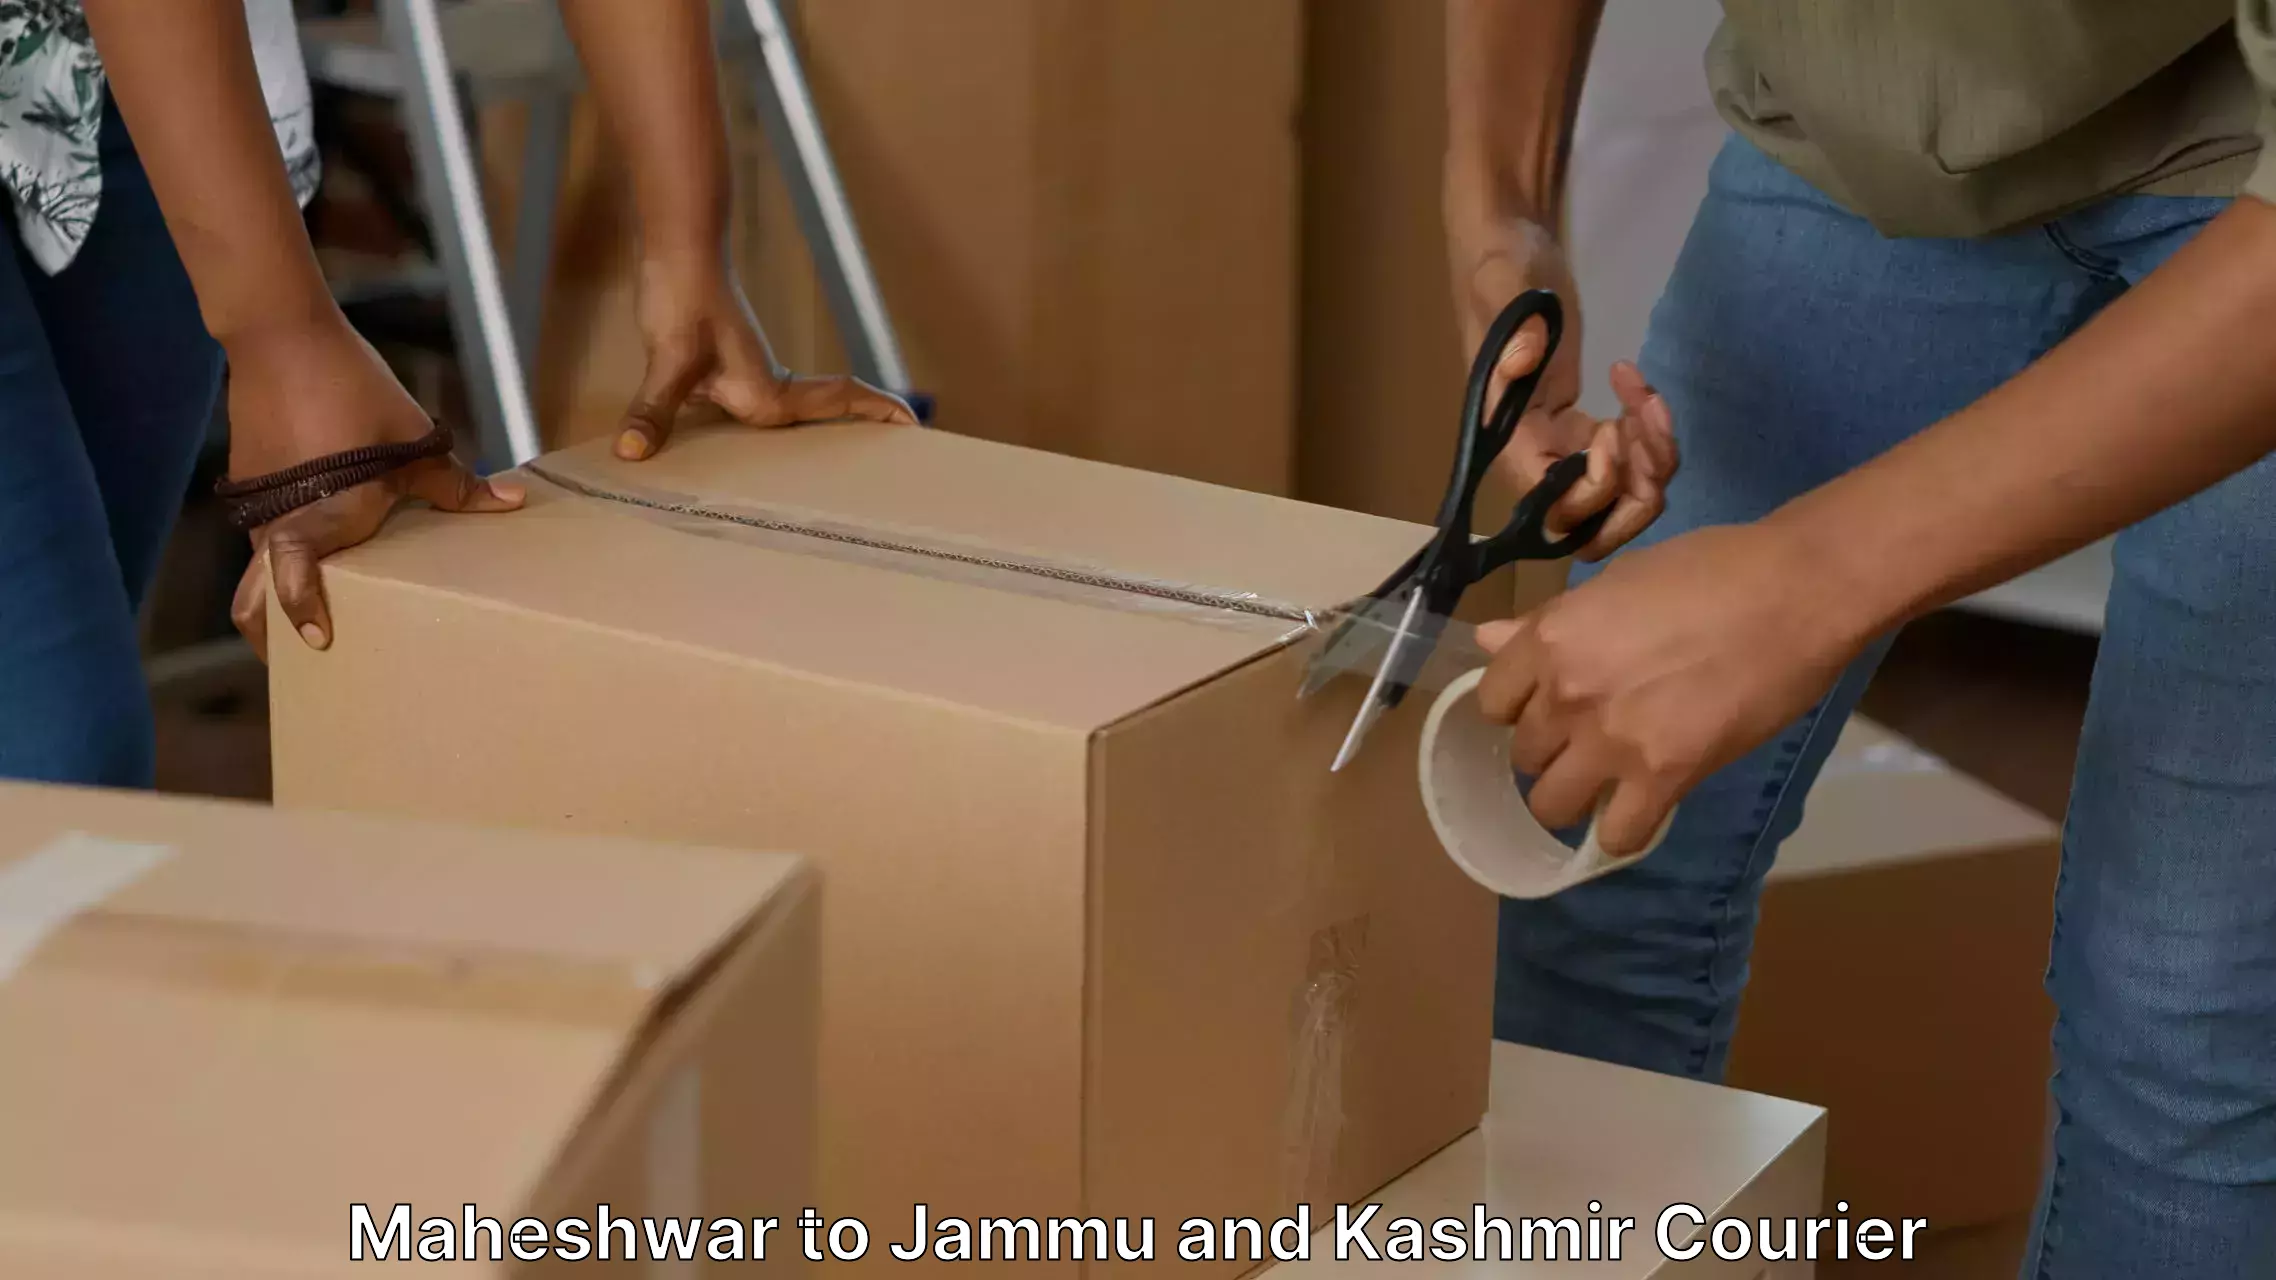 Expert home movers Maheshwar to Srinagar Kashmir